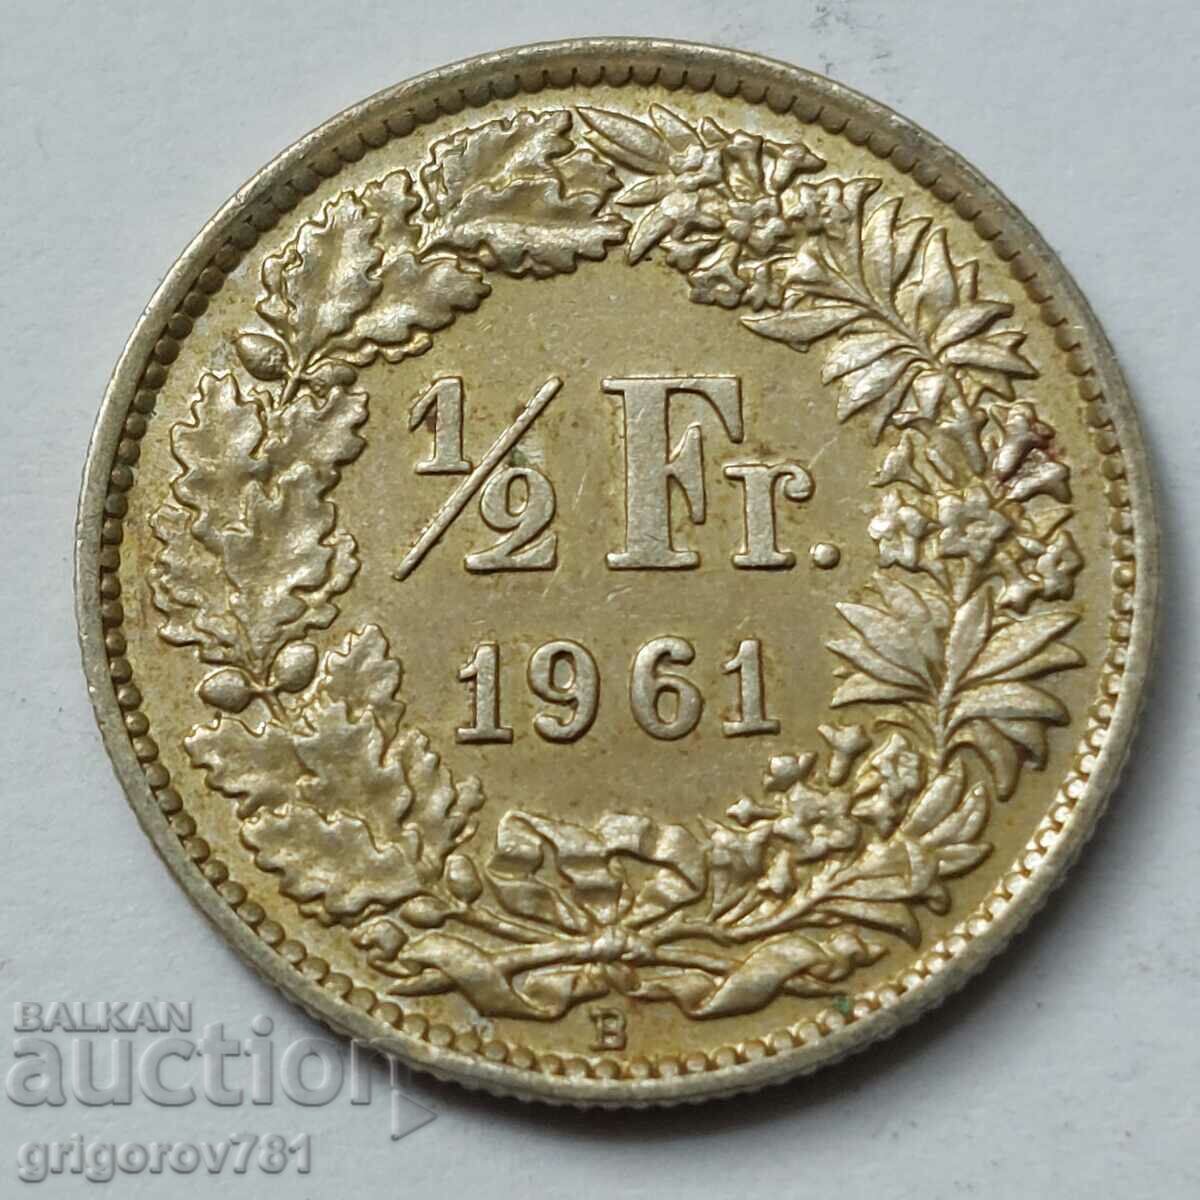 Ασημένιο φράγκο 1/2 Ελβετία 1961 Β - Ασημένιο νόμισμα #56